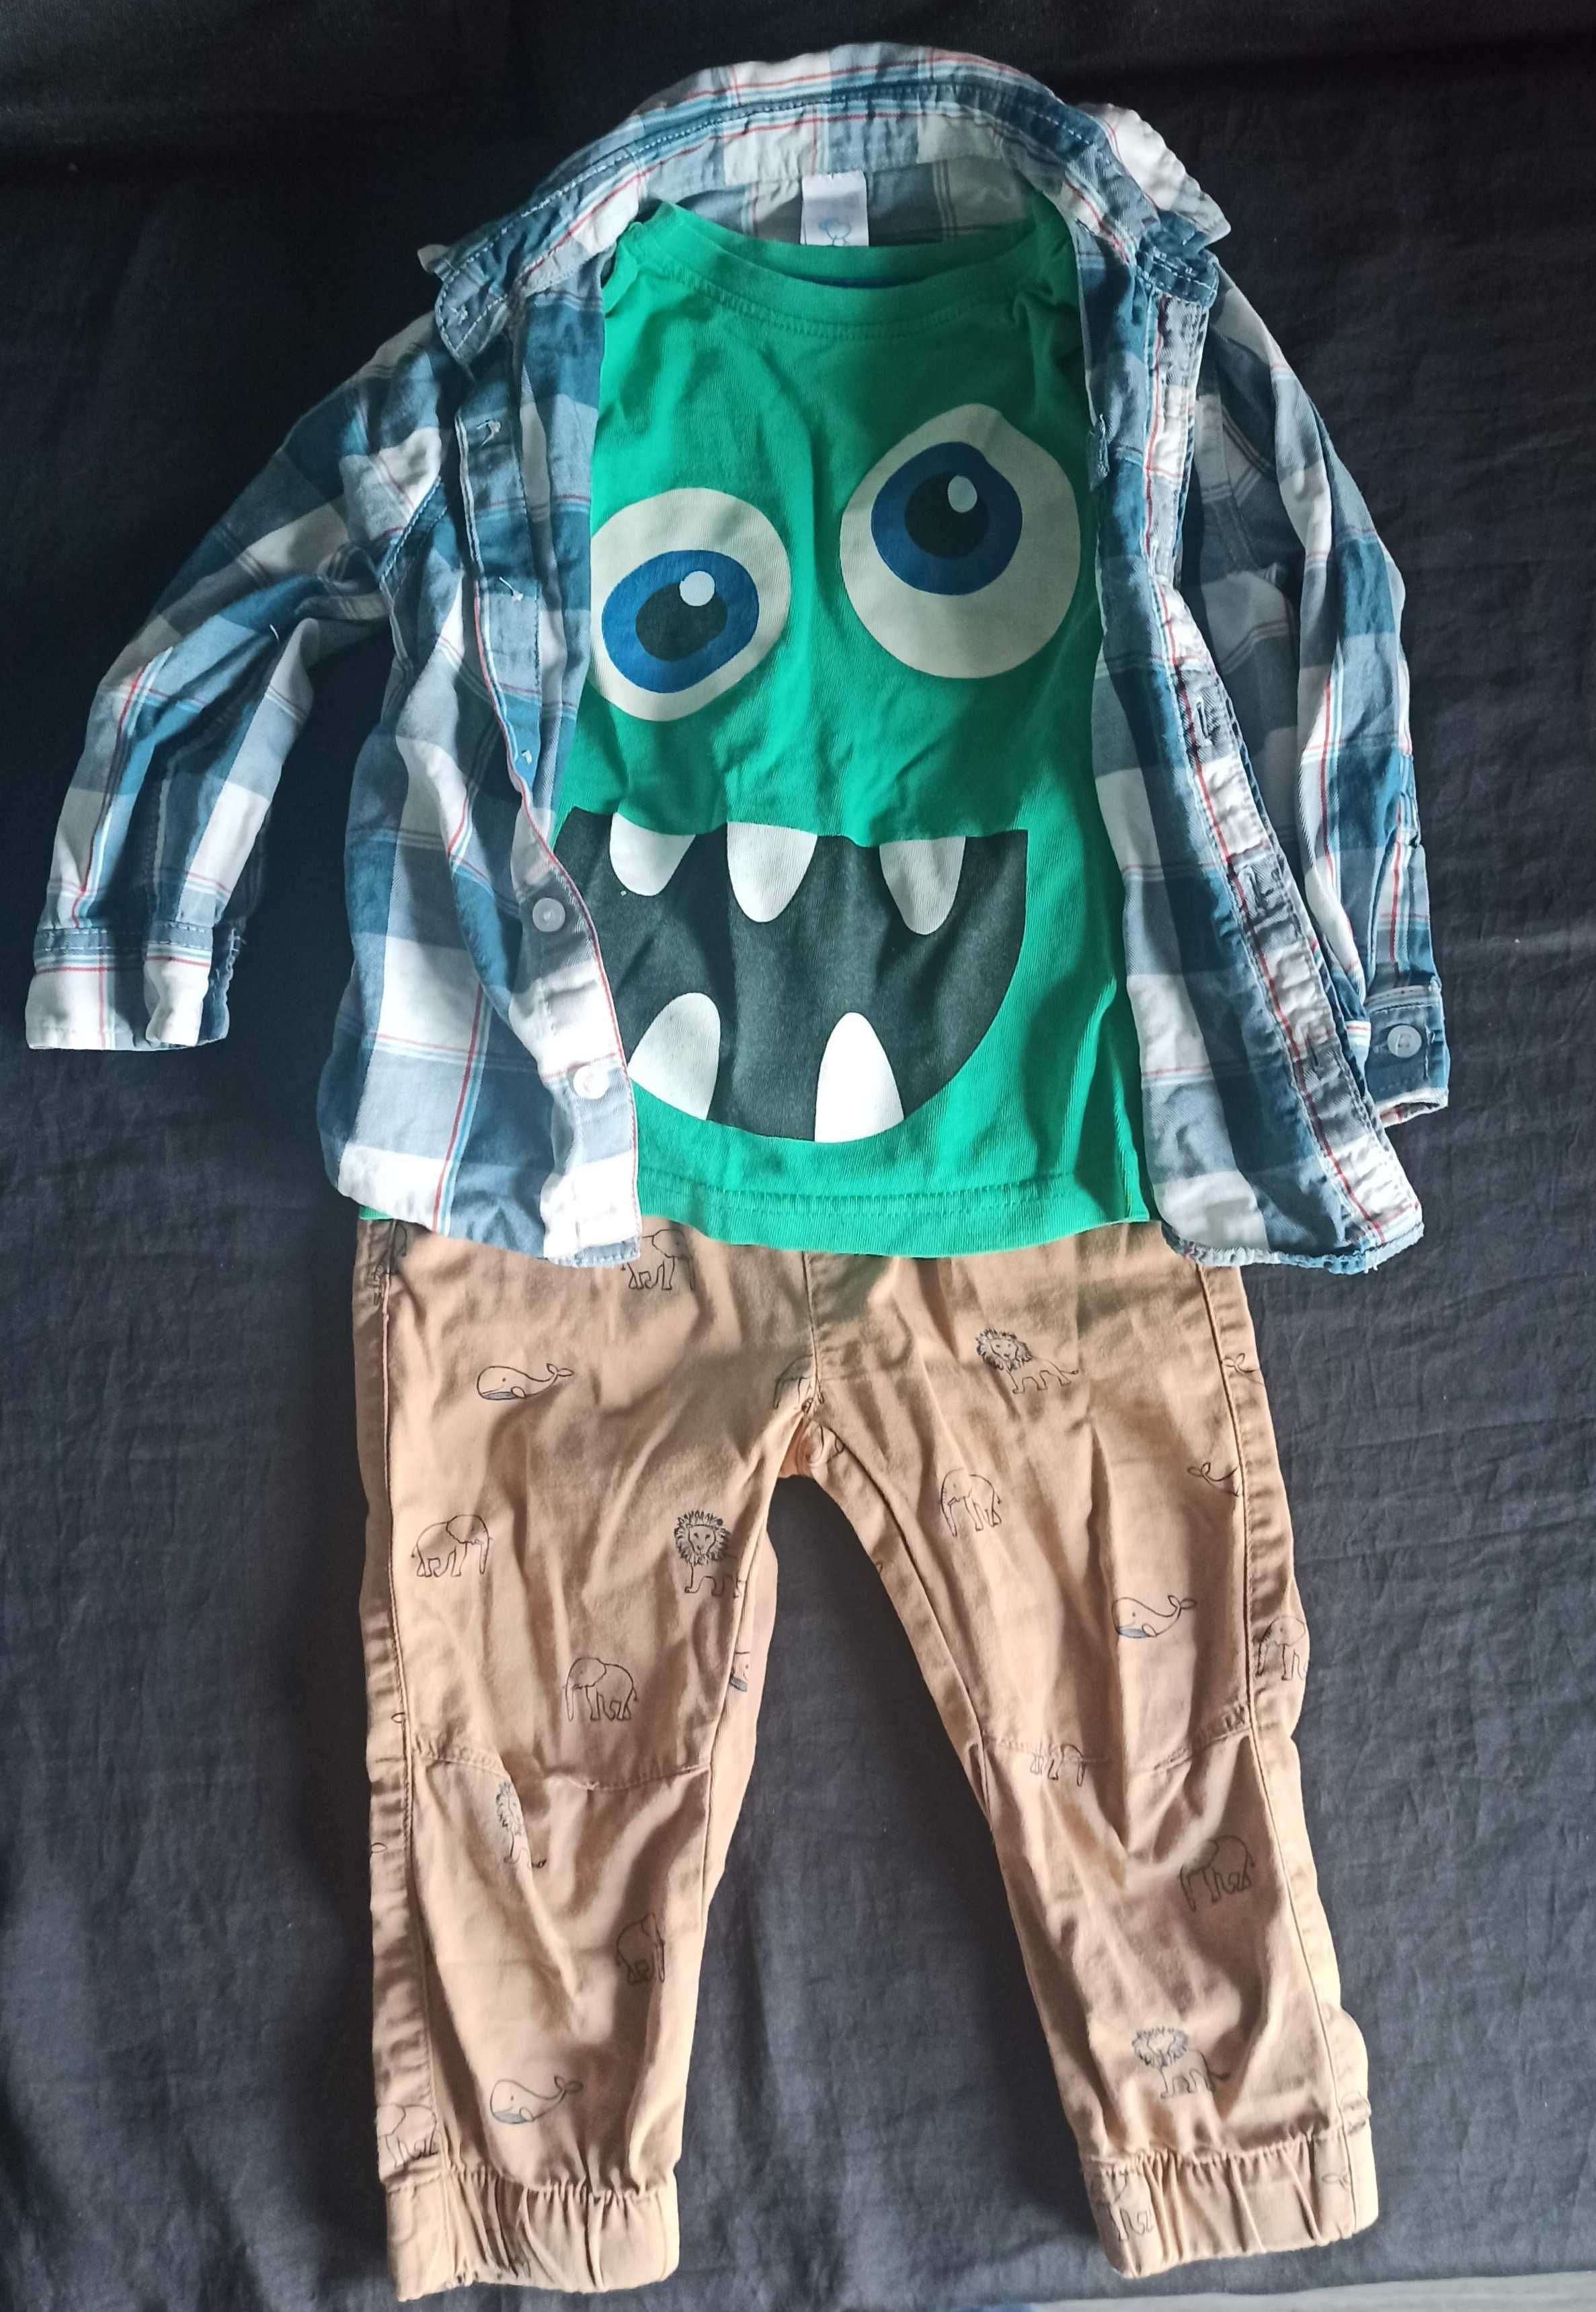 Duży Zestaw ubrań dla chłopca koszule, koszulki, spodnie roz 86